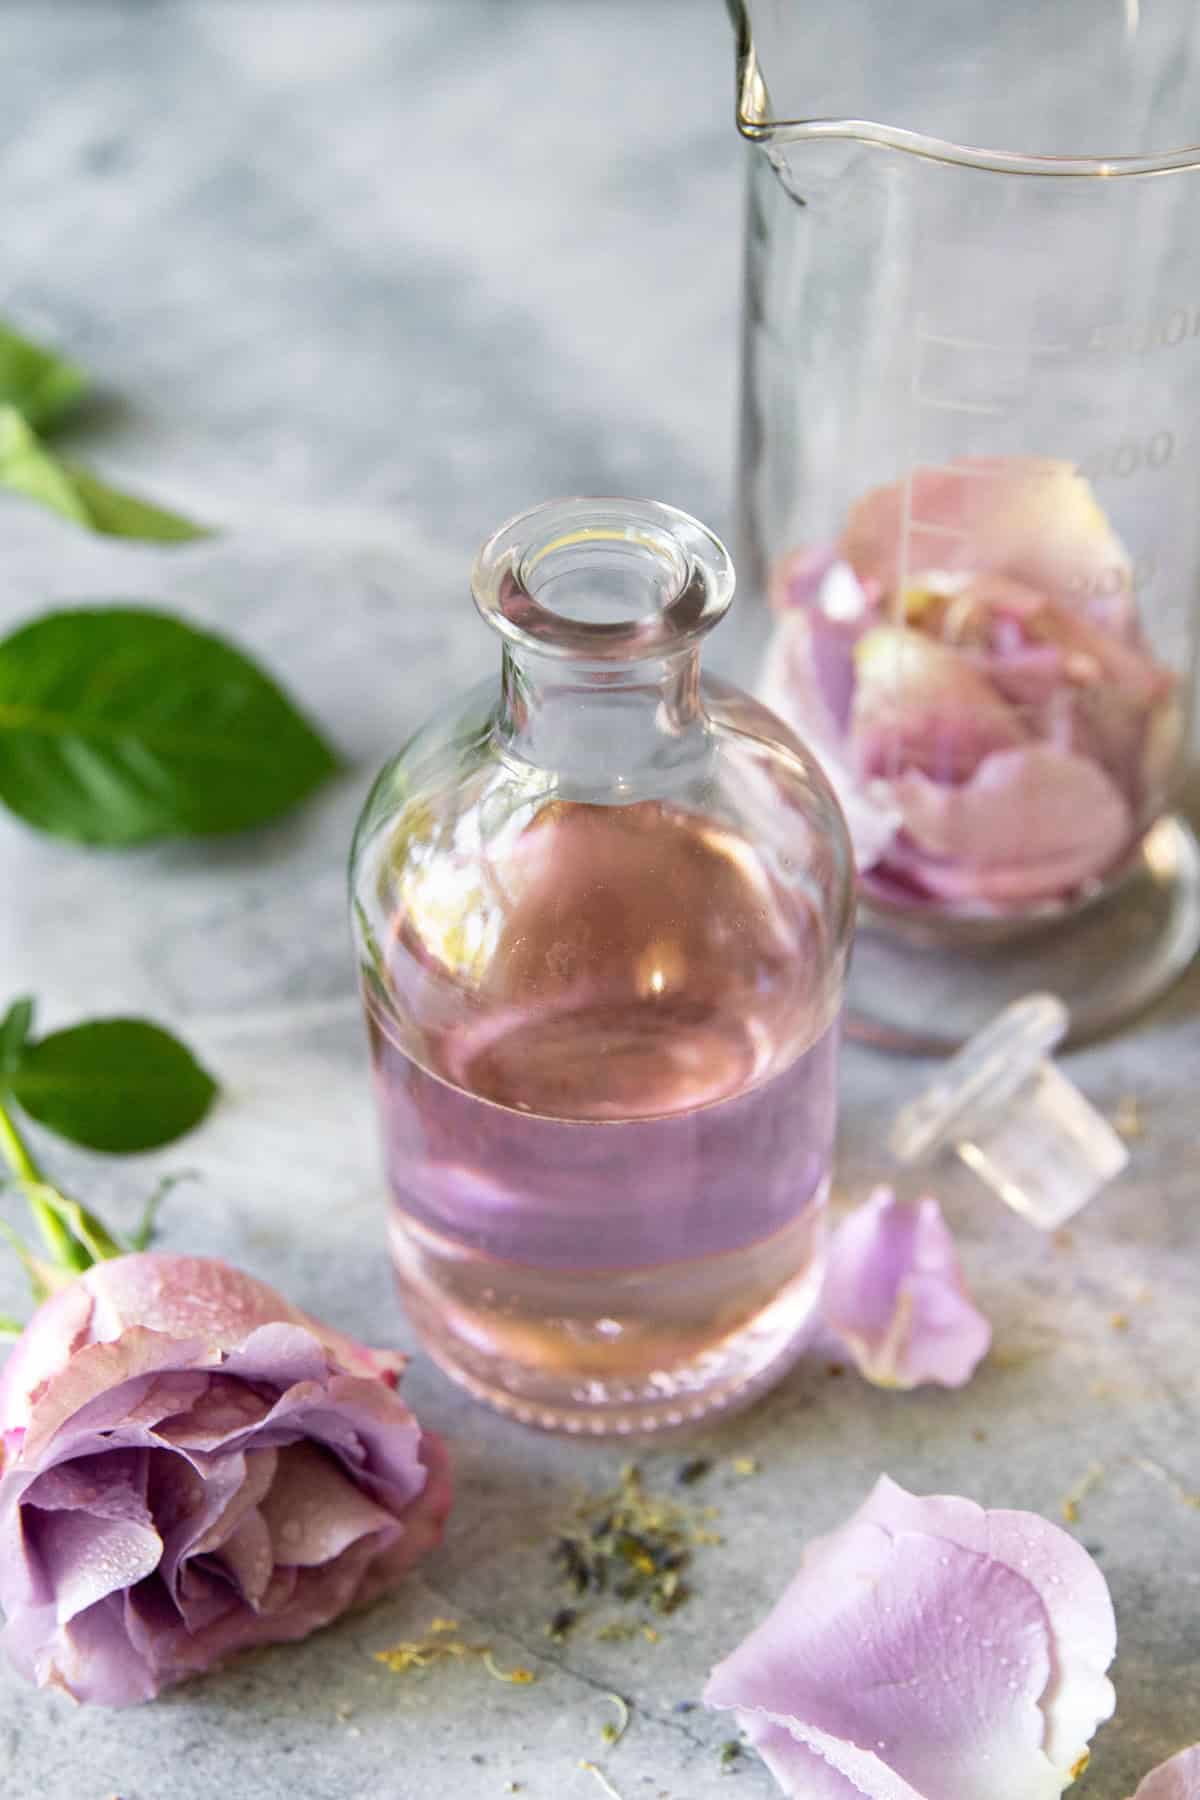 How to Make Rose Perfume